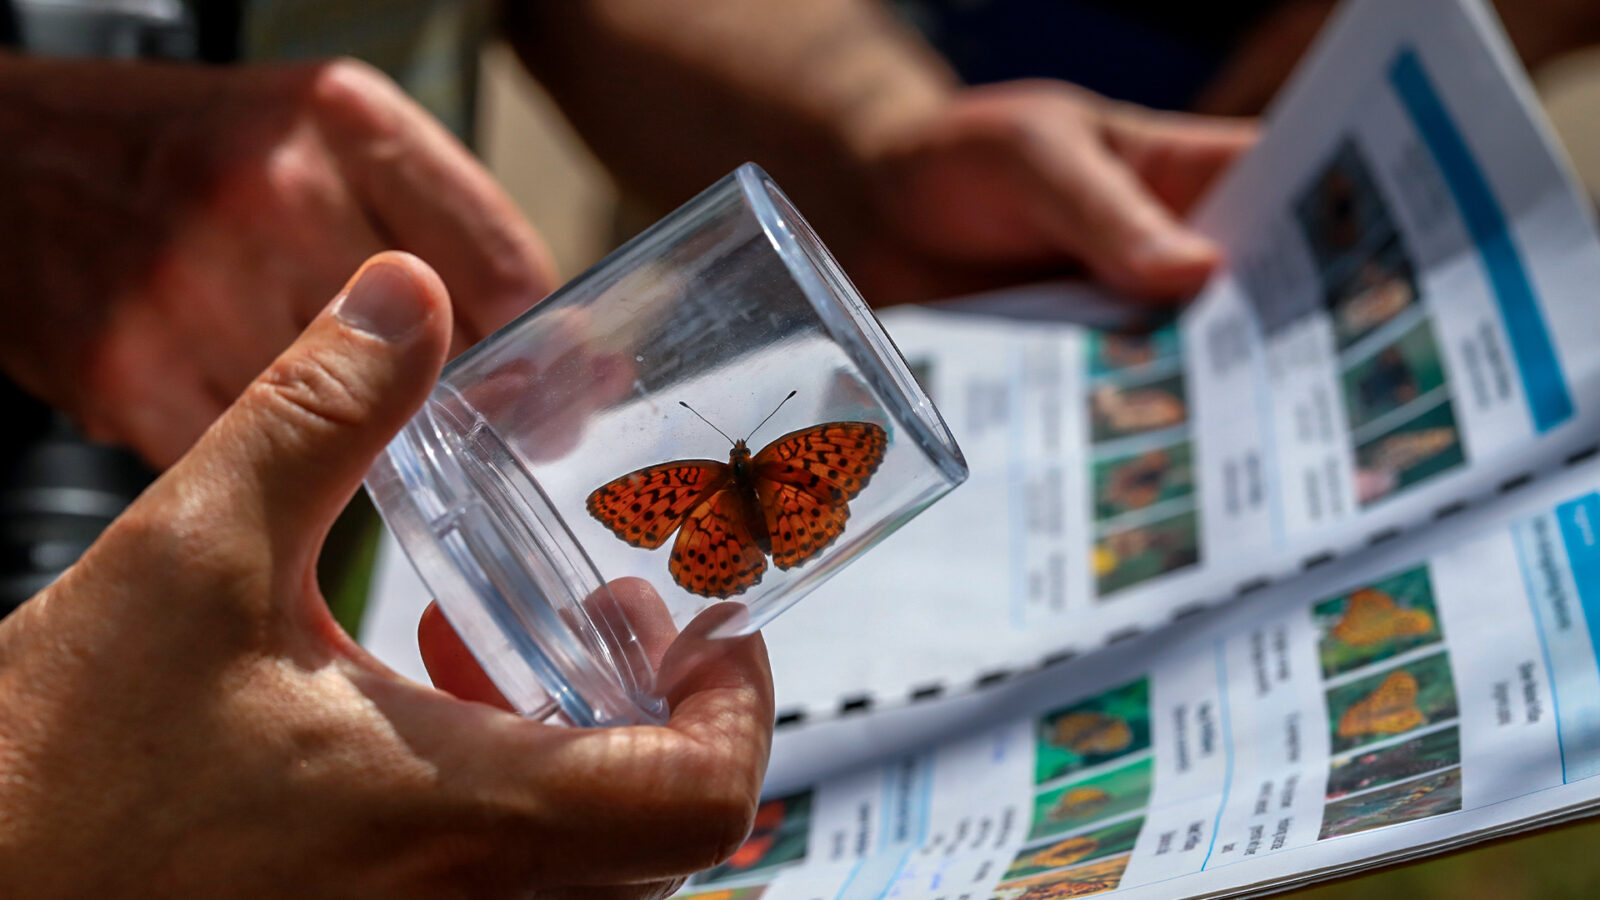 Imagem de borboleta em recipiente de vidro e livro sobre borboletas ao fundo.